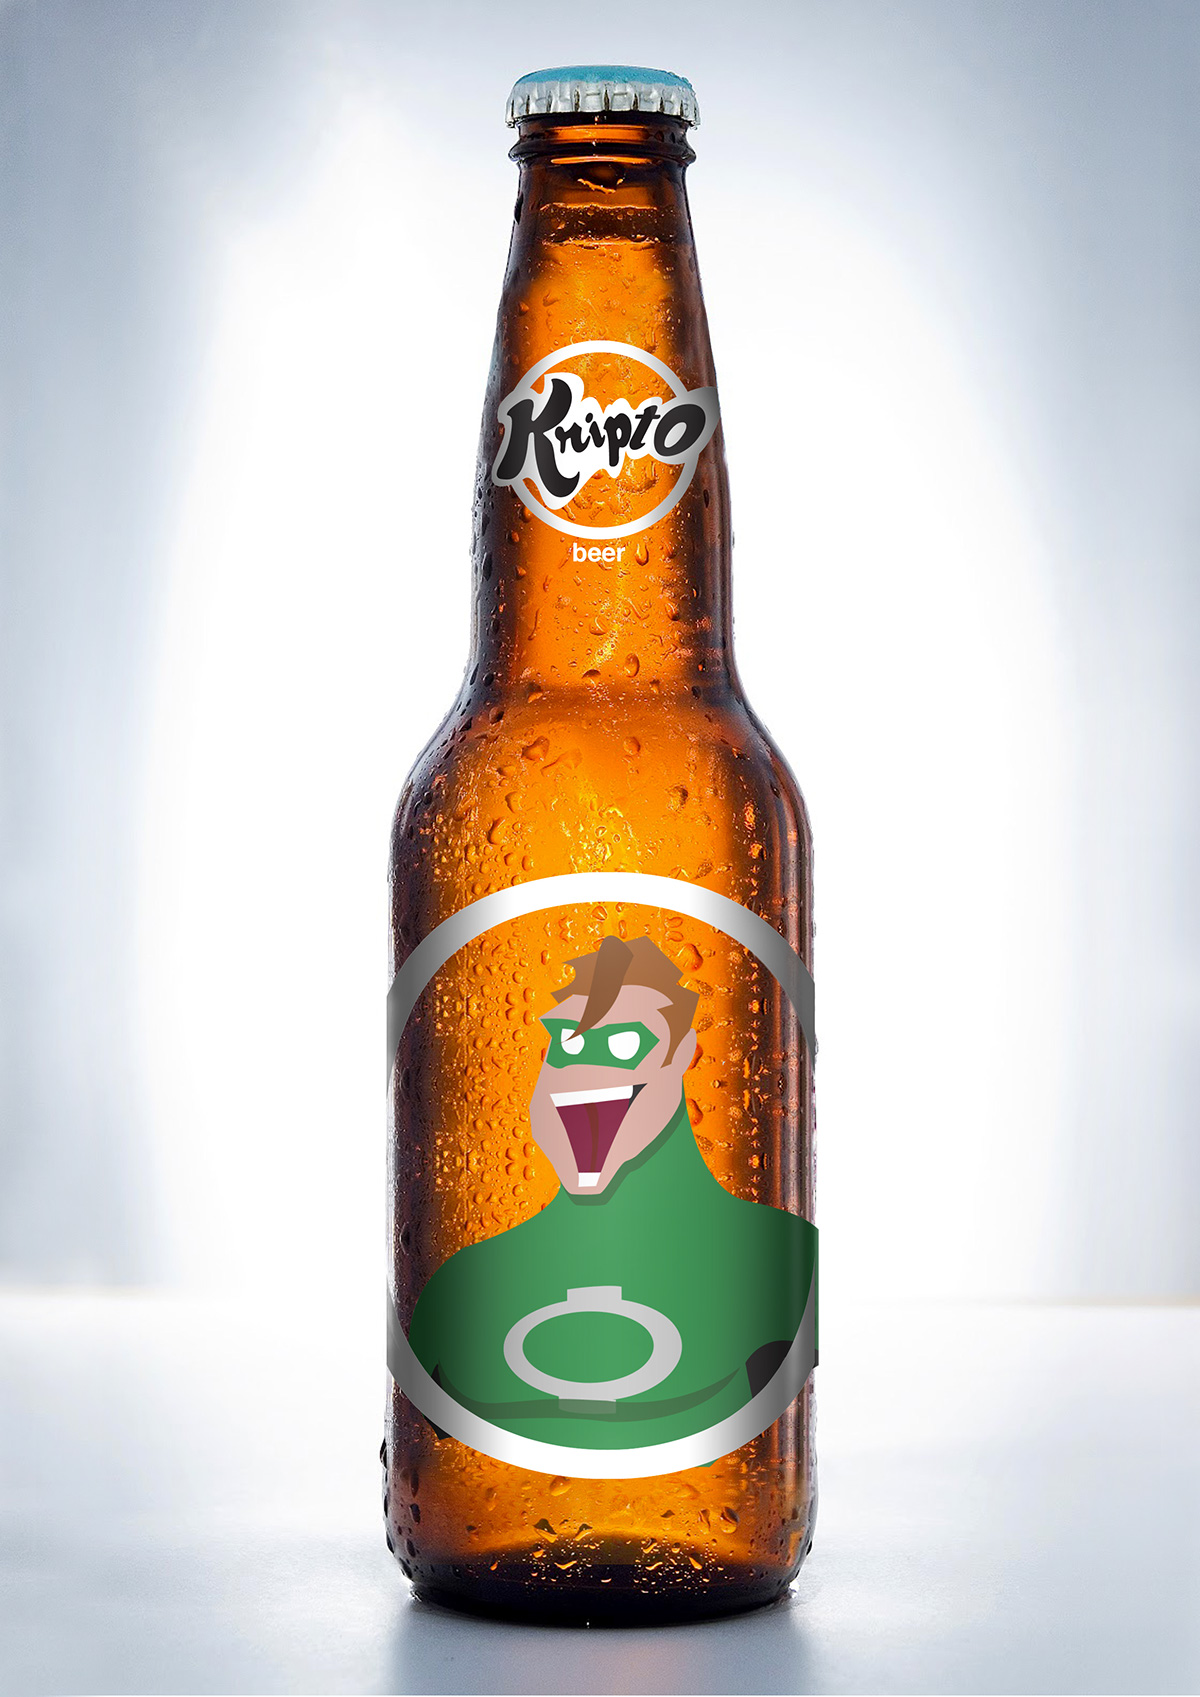 Flash's version Kripto beer Packaging design